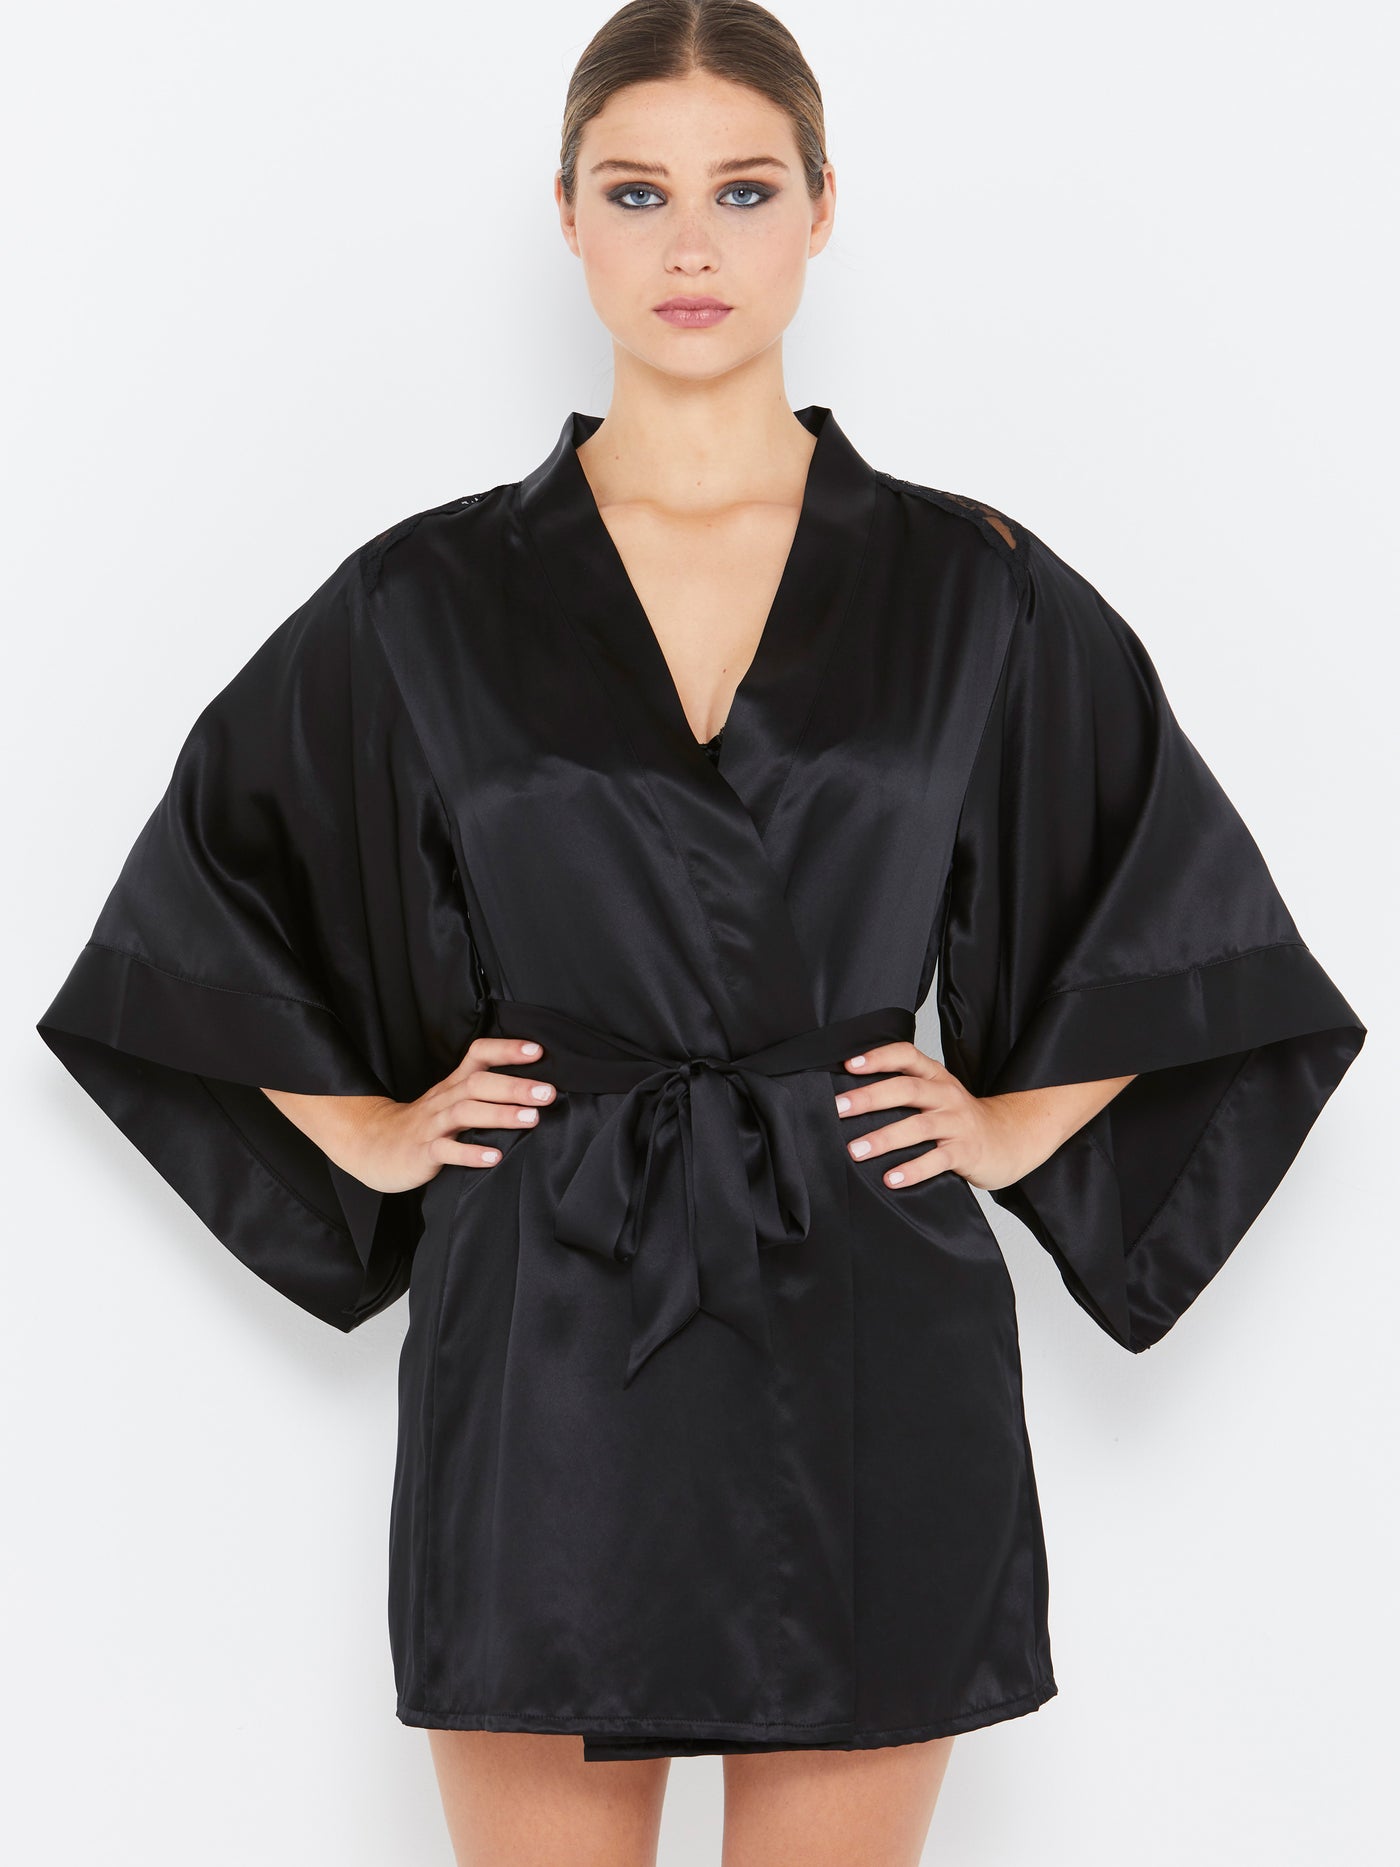 Sophia black silk robe front view